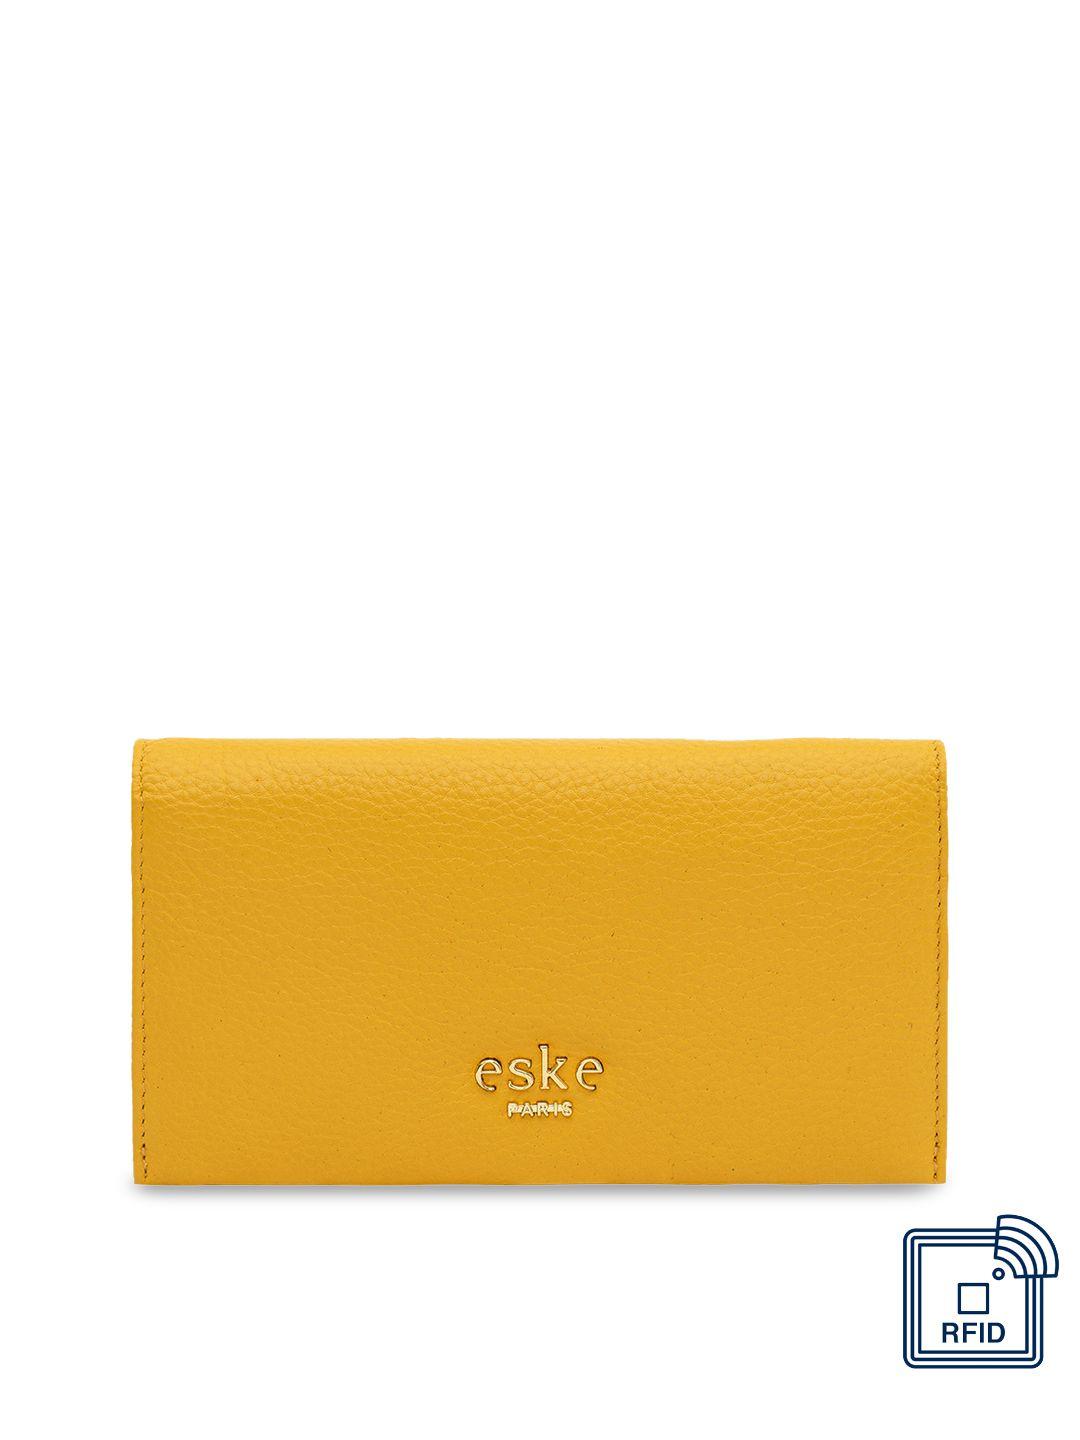 eske women yellow solid leather two fold wallet